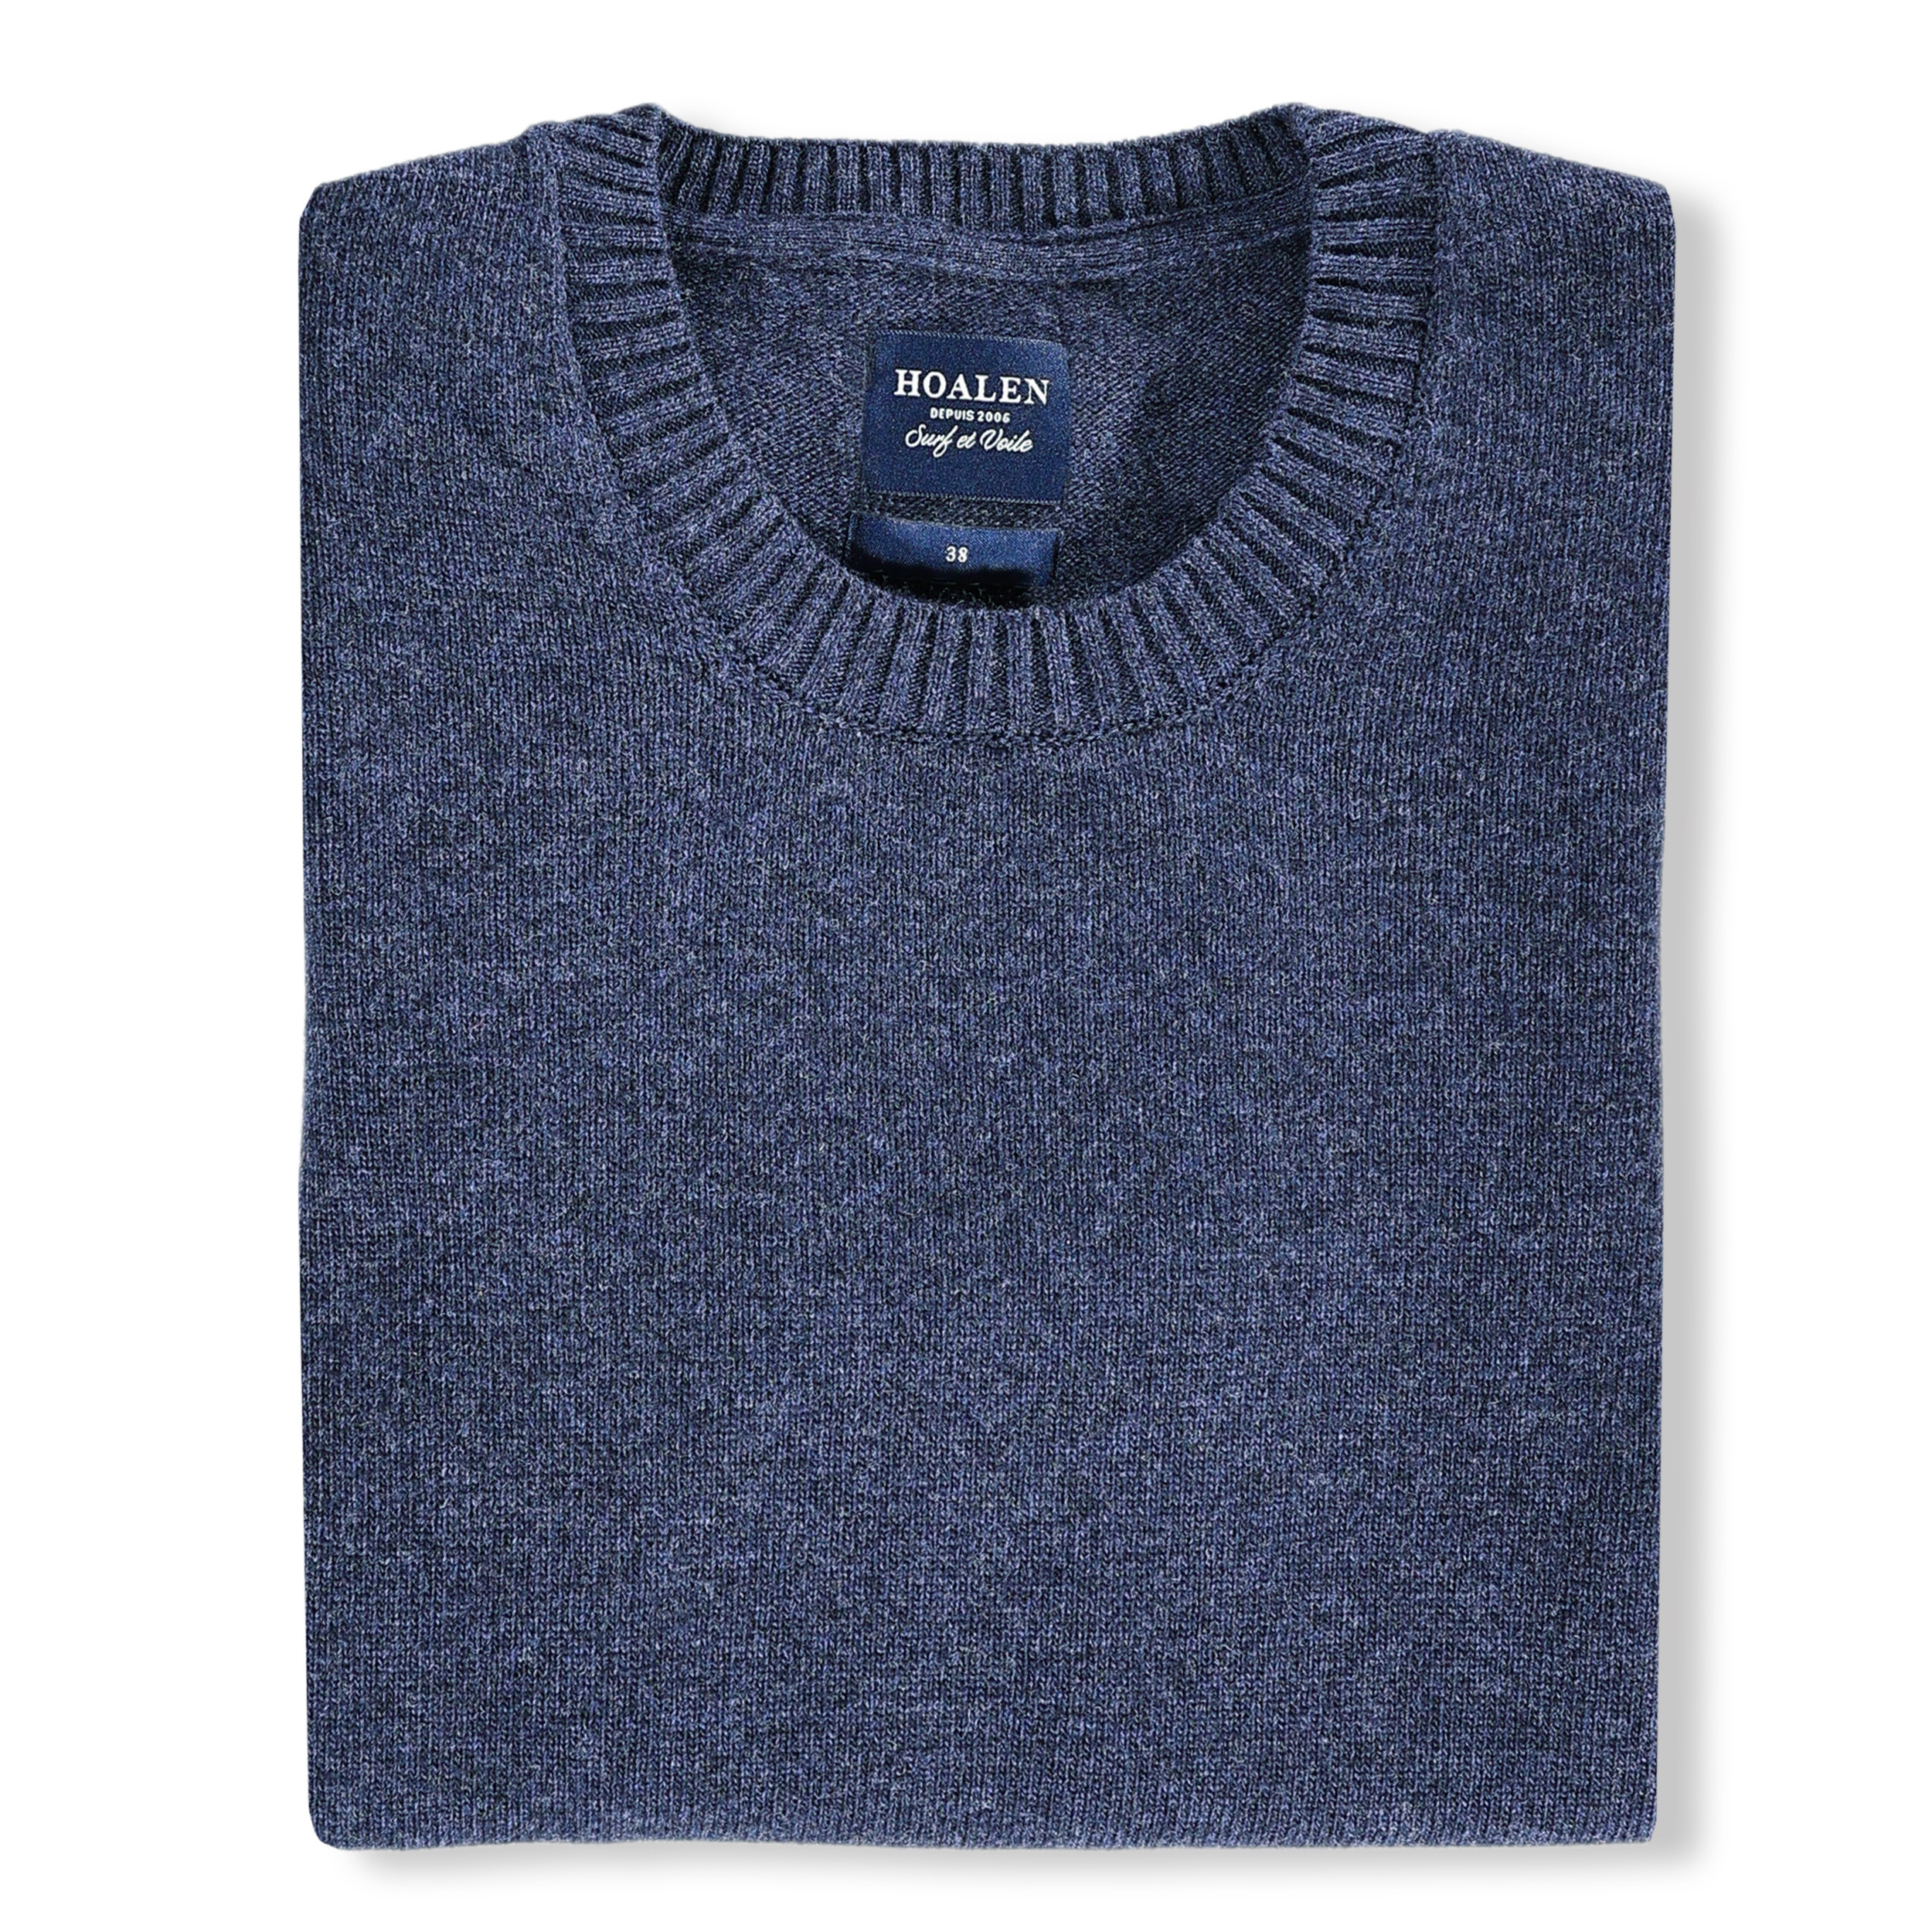 Merino wool Sweater